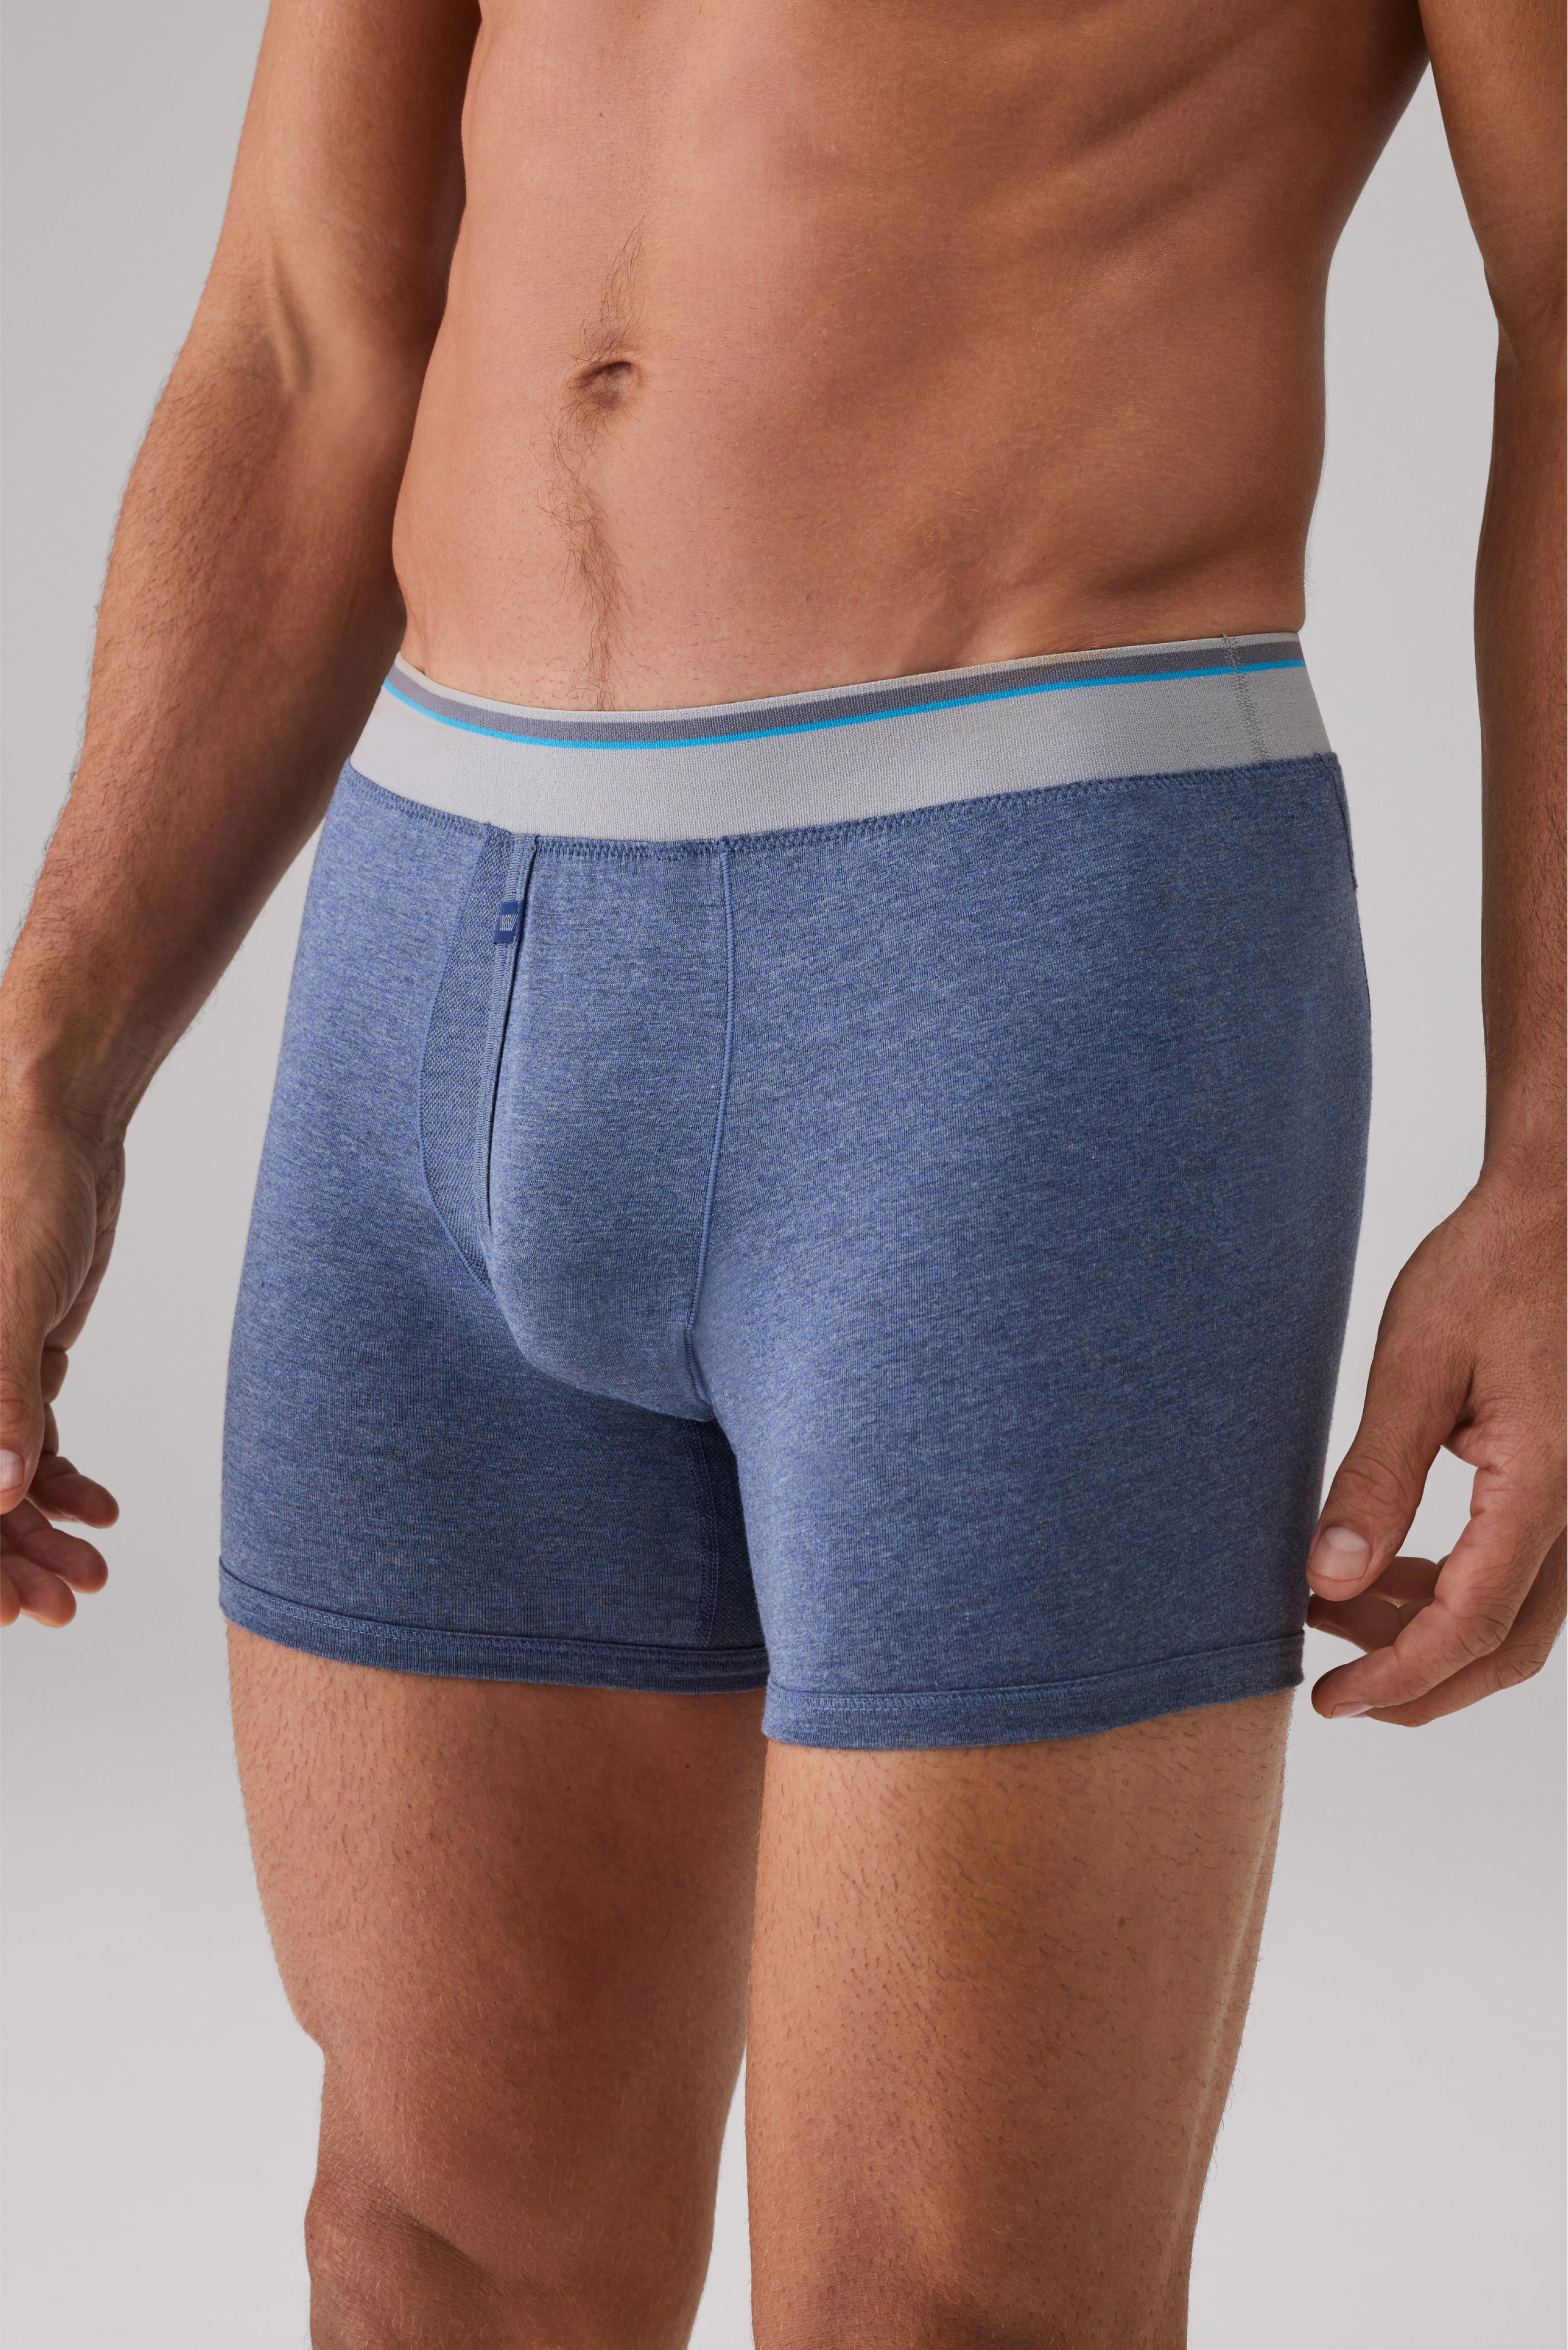 Silk Satin Briefs Men's Satin Underwear Blue Khaki Gift for Men